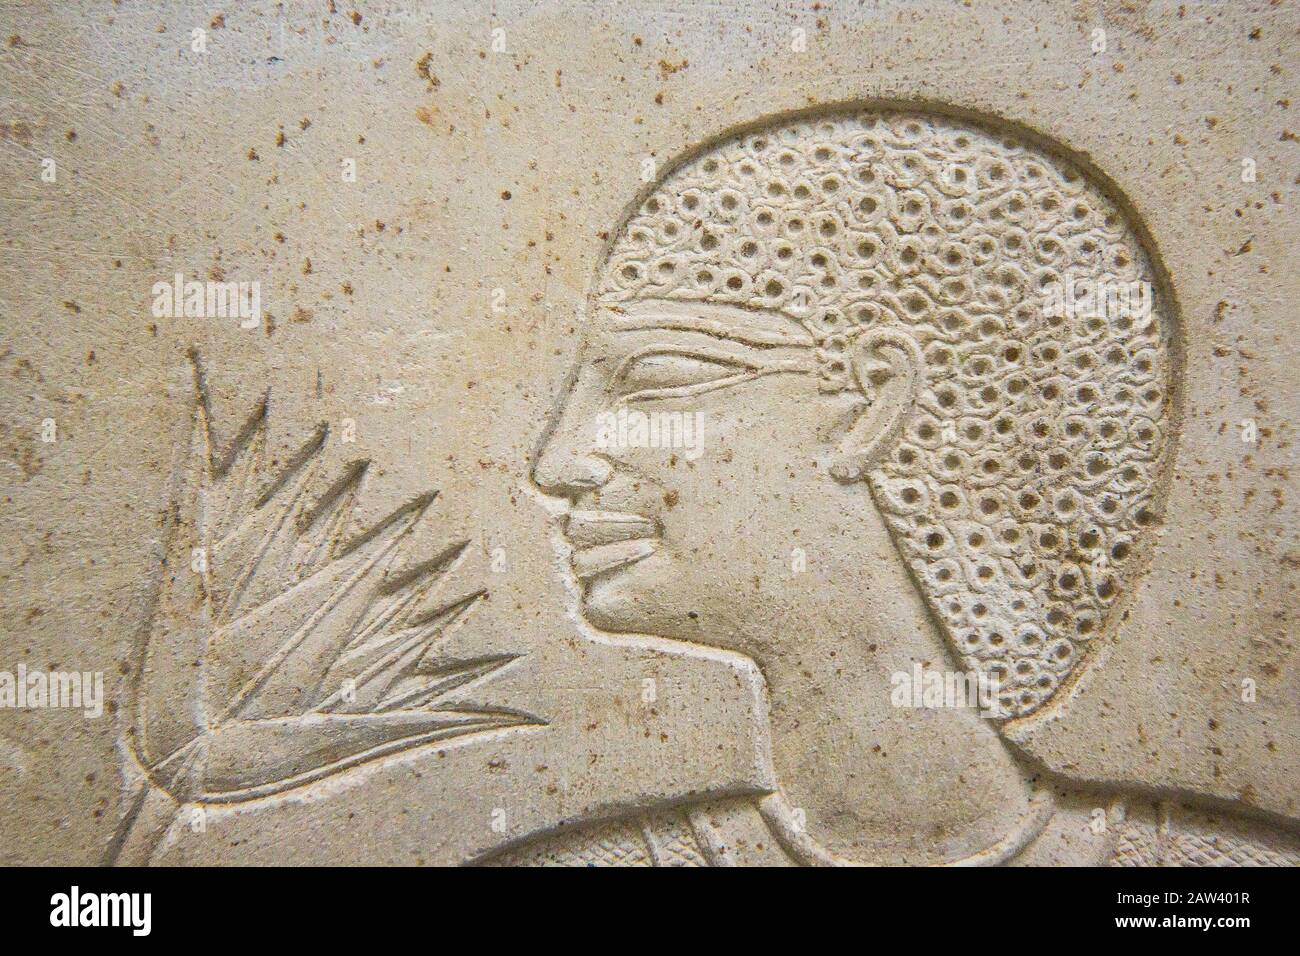 Egypte, le Caire, Musée égyptien, sarcophage de la reine Kawit, avec quelques-uns des plus beaux reliefs jamais sculptés en Egypte. Kawit était une femme de Montuhotep 2. Banque D'Images